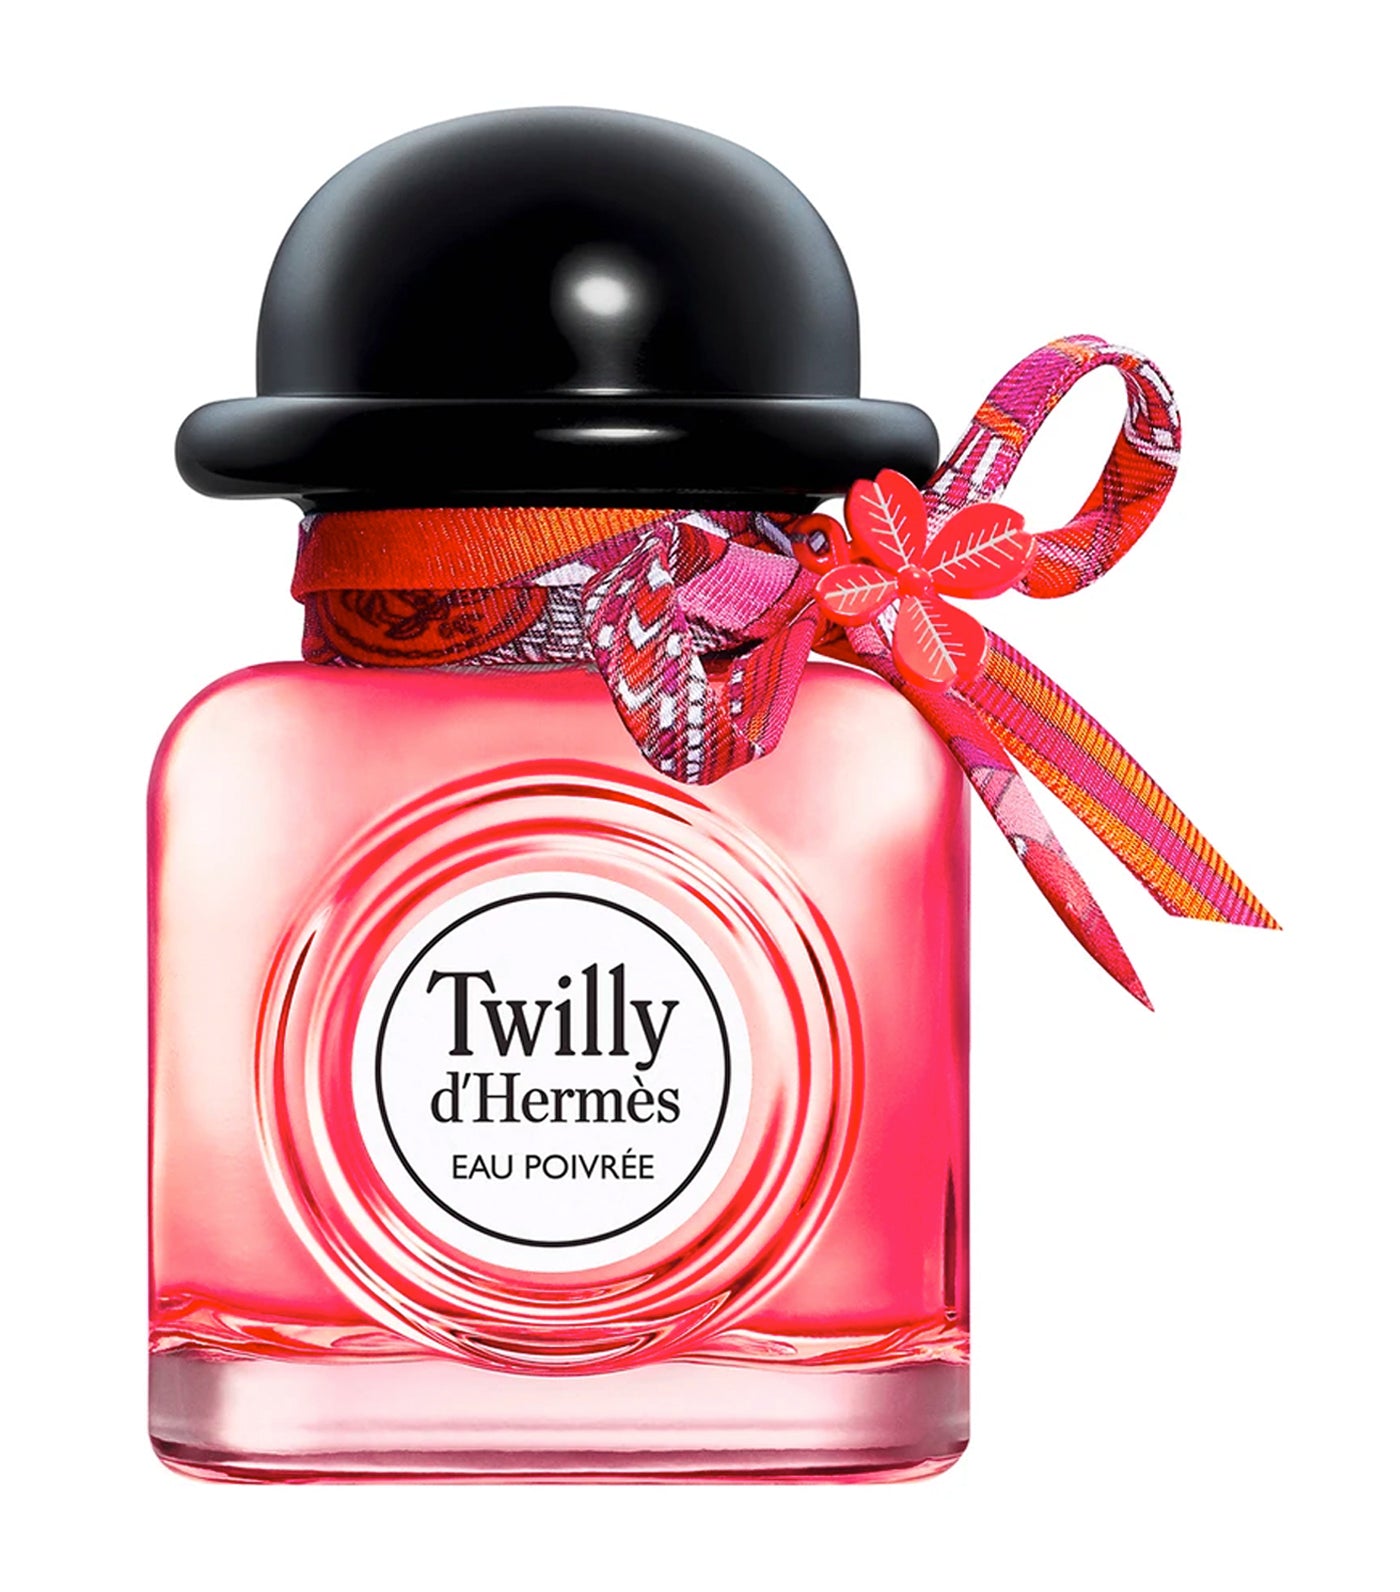 Twilly d'Hermès Eau Poivrée Eau de Parfum Limited Edition Charming Twilly 85ml